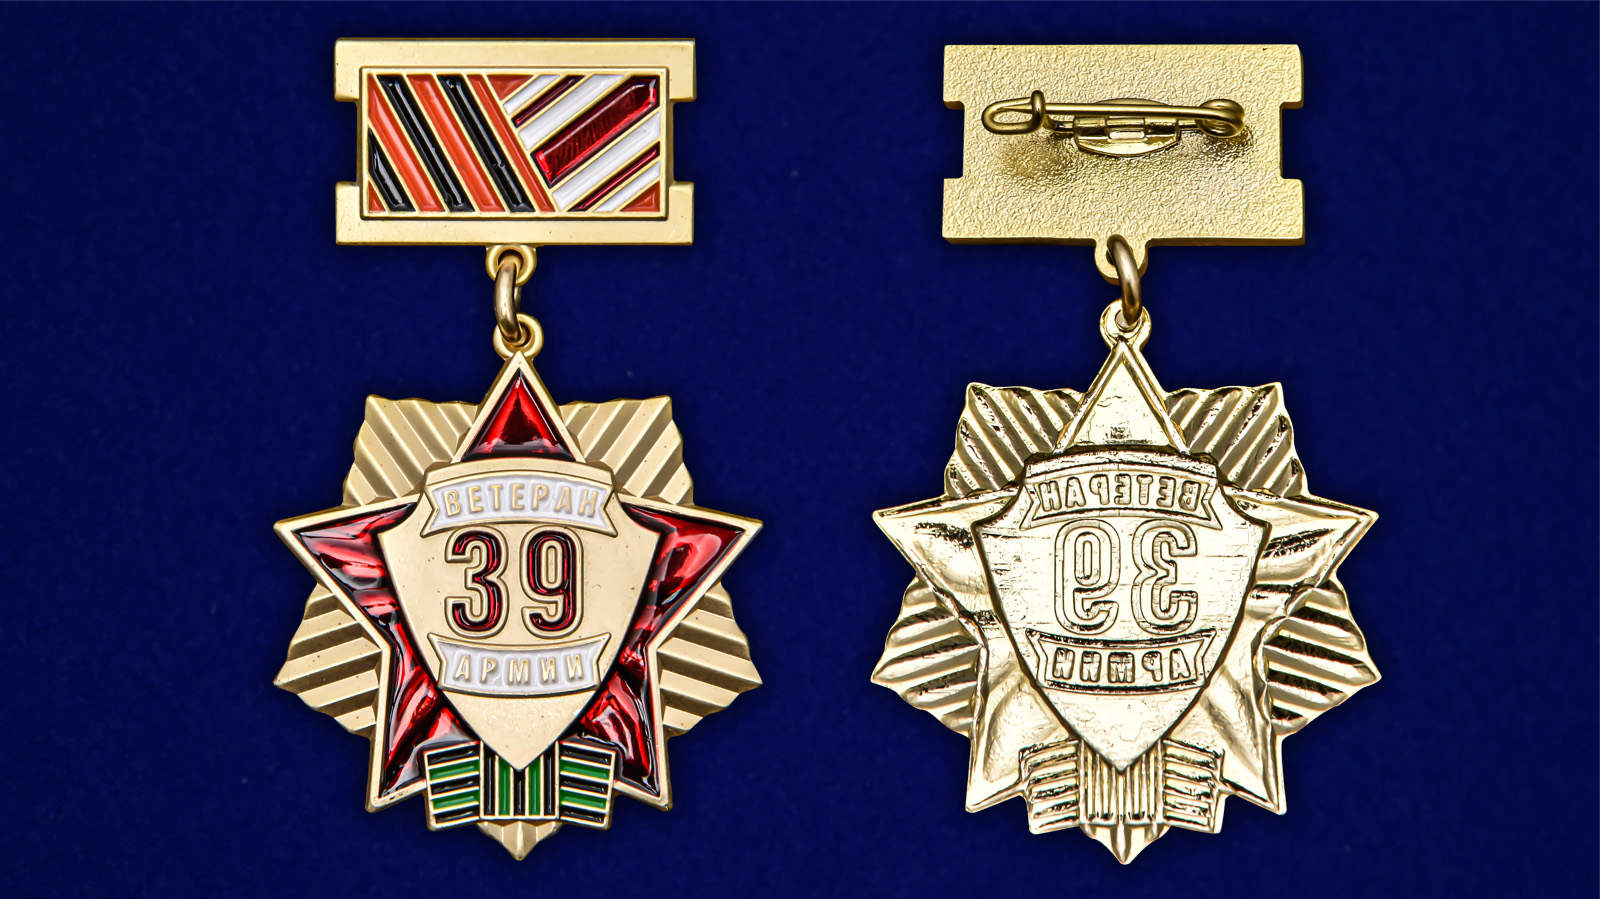 Описание медали "Ветеран 39 Армии"